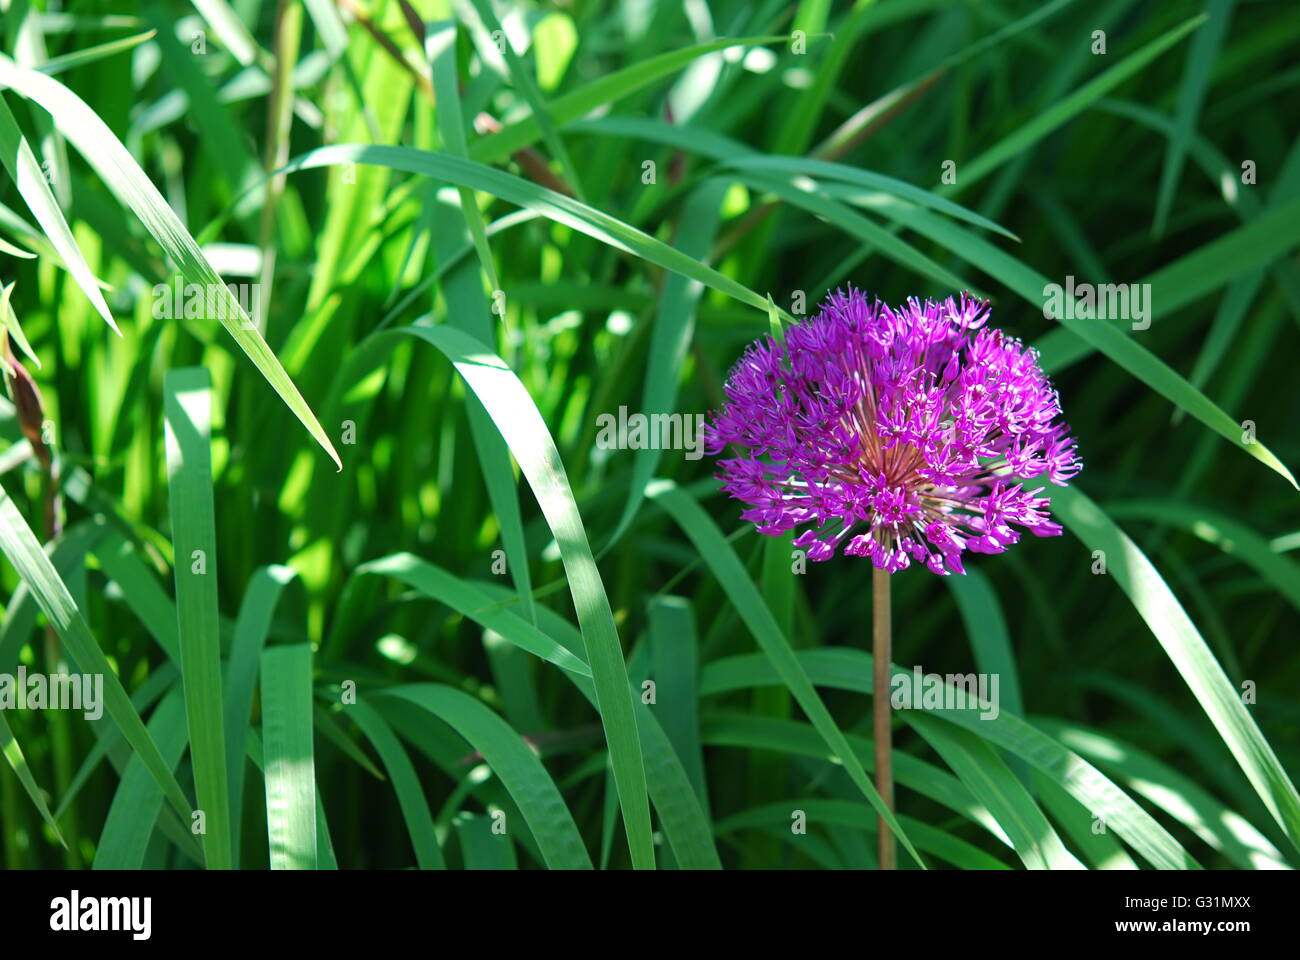 Allium Blumen grün Hintergrund Stockfoto